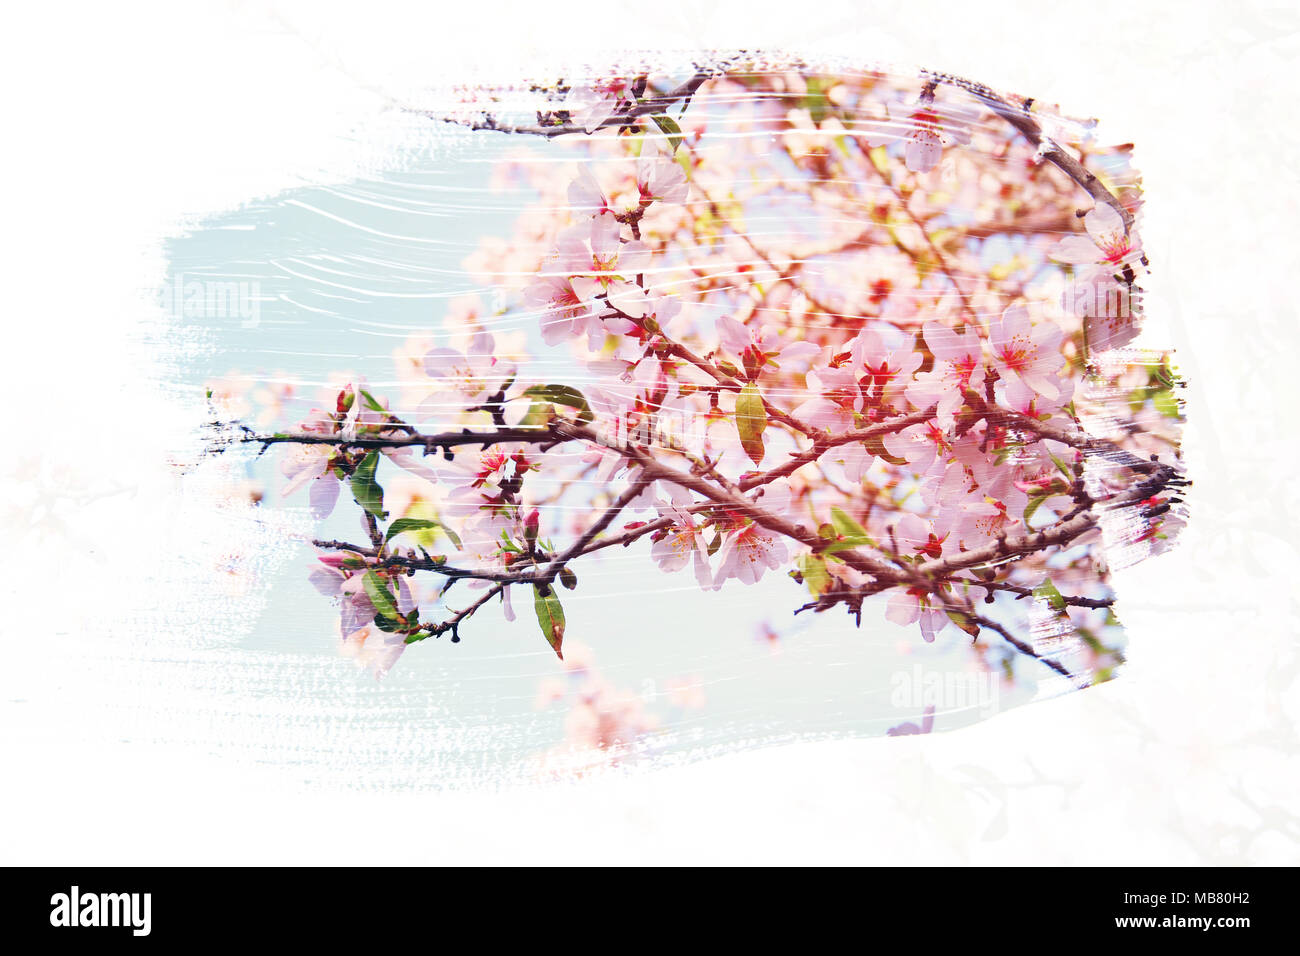 Sognante e immagine astratta di ciliegio. doppia esposizione con effetto acquerello pennello texture Foto Stock